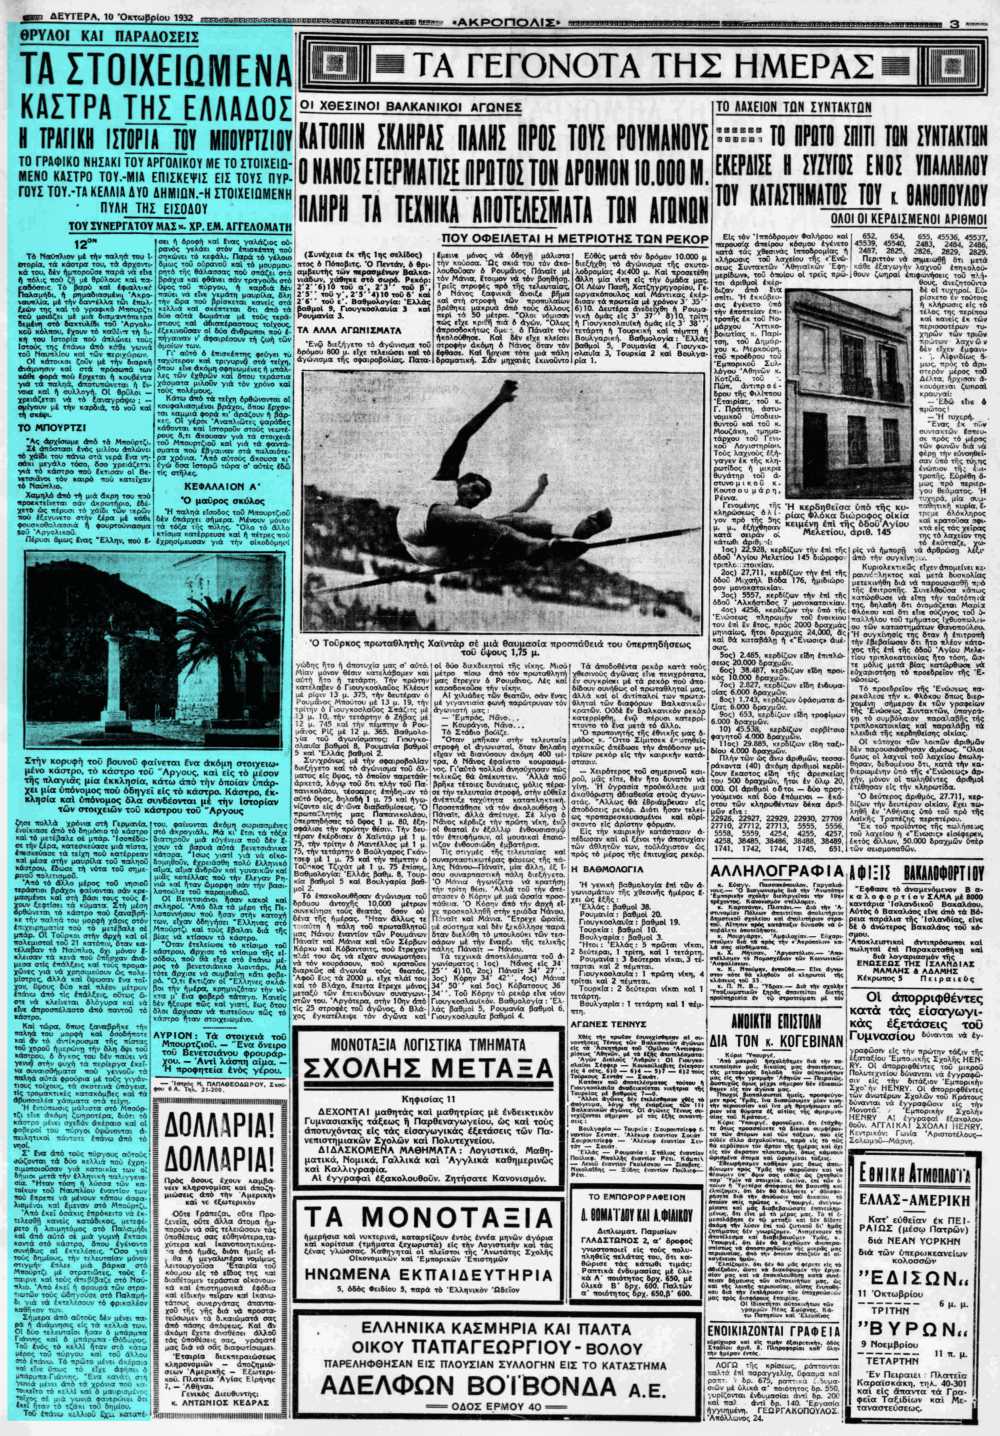 Το άρθρο, όπως δημοσιεύθηκε στην εφημερίδα "ΑΚΡΟΠΟΛΙΣ", στις 10/10/1932